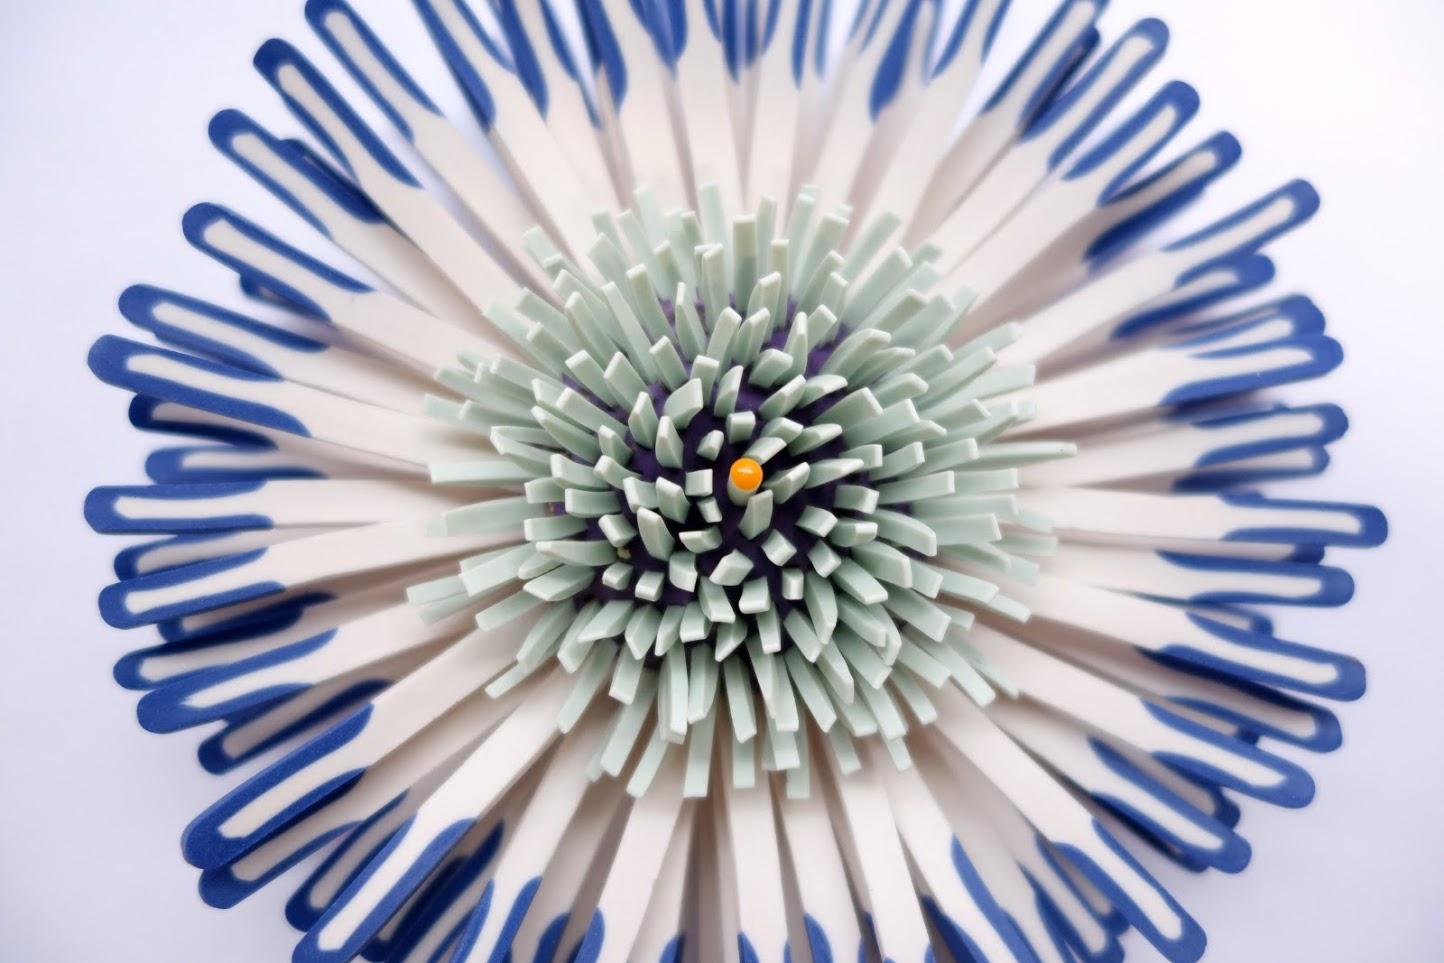 Shard Flower 2 - Sculpture by Zemer Peled